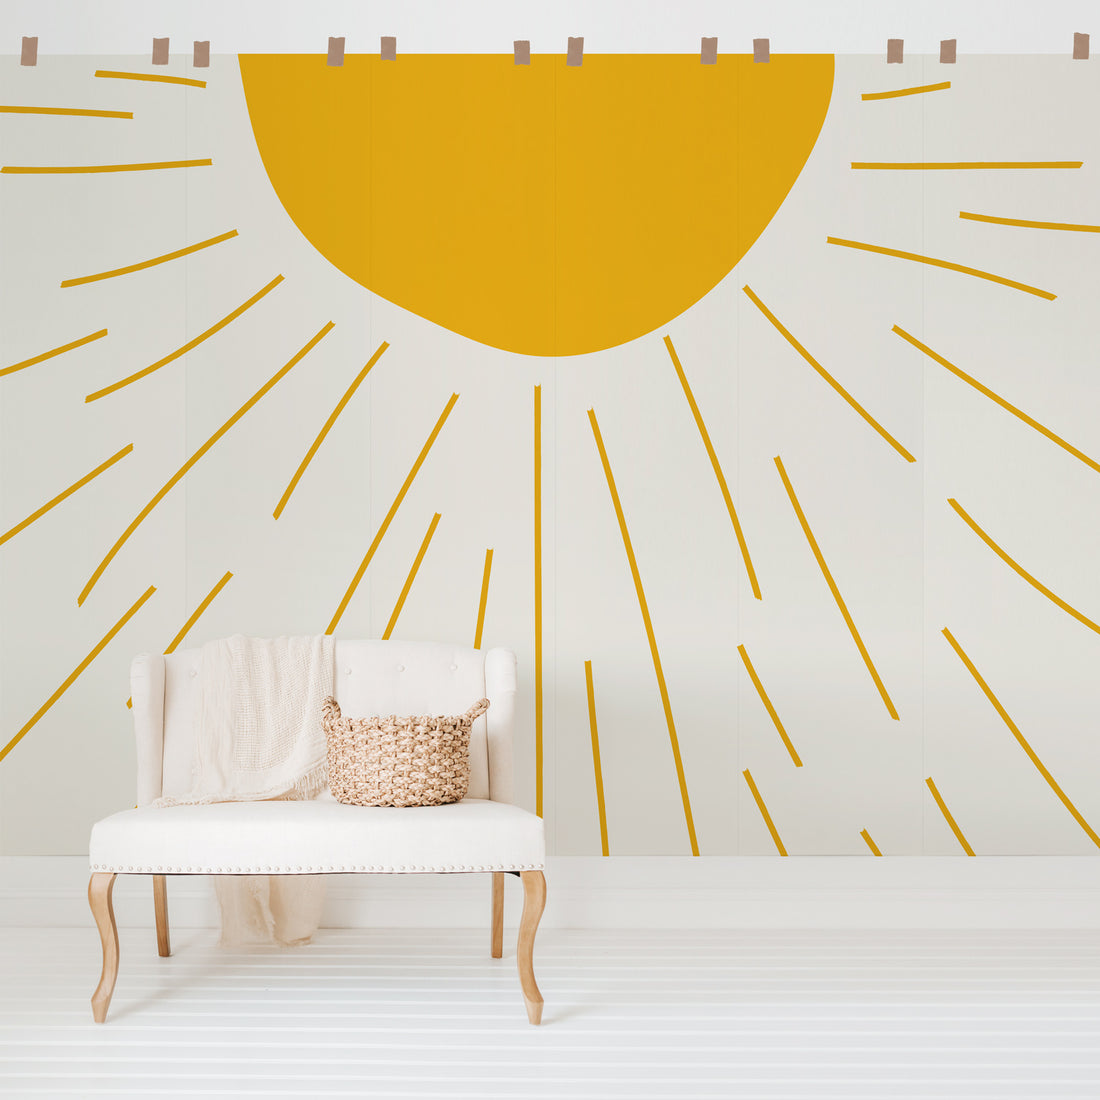 Desert sun wall mural for kids room interiors